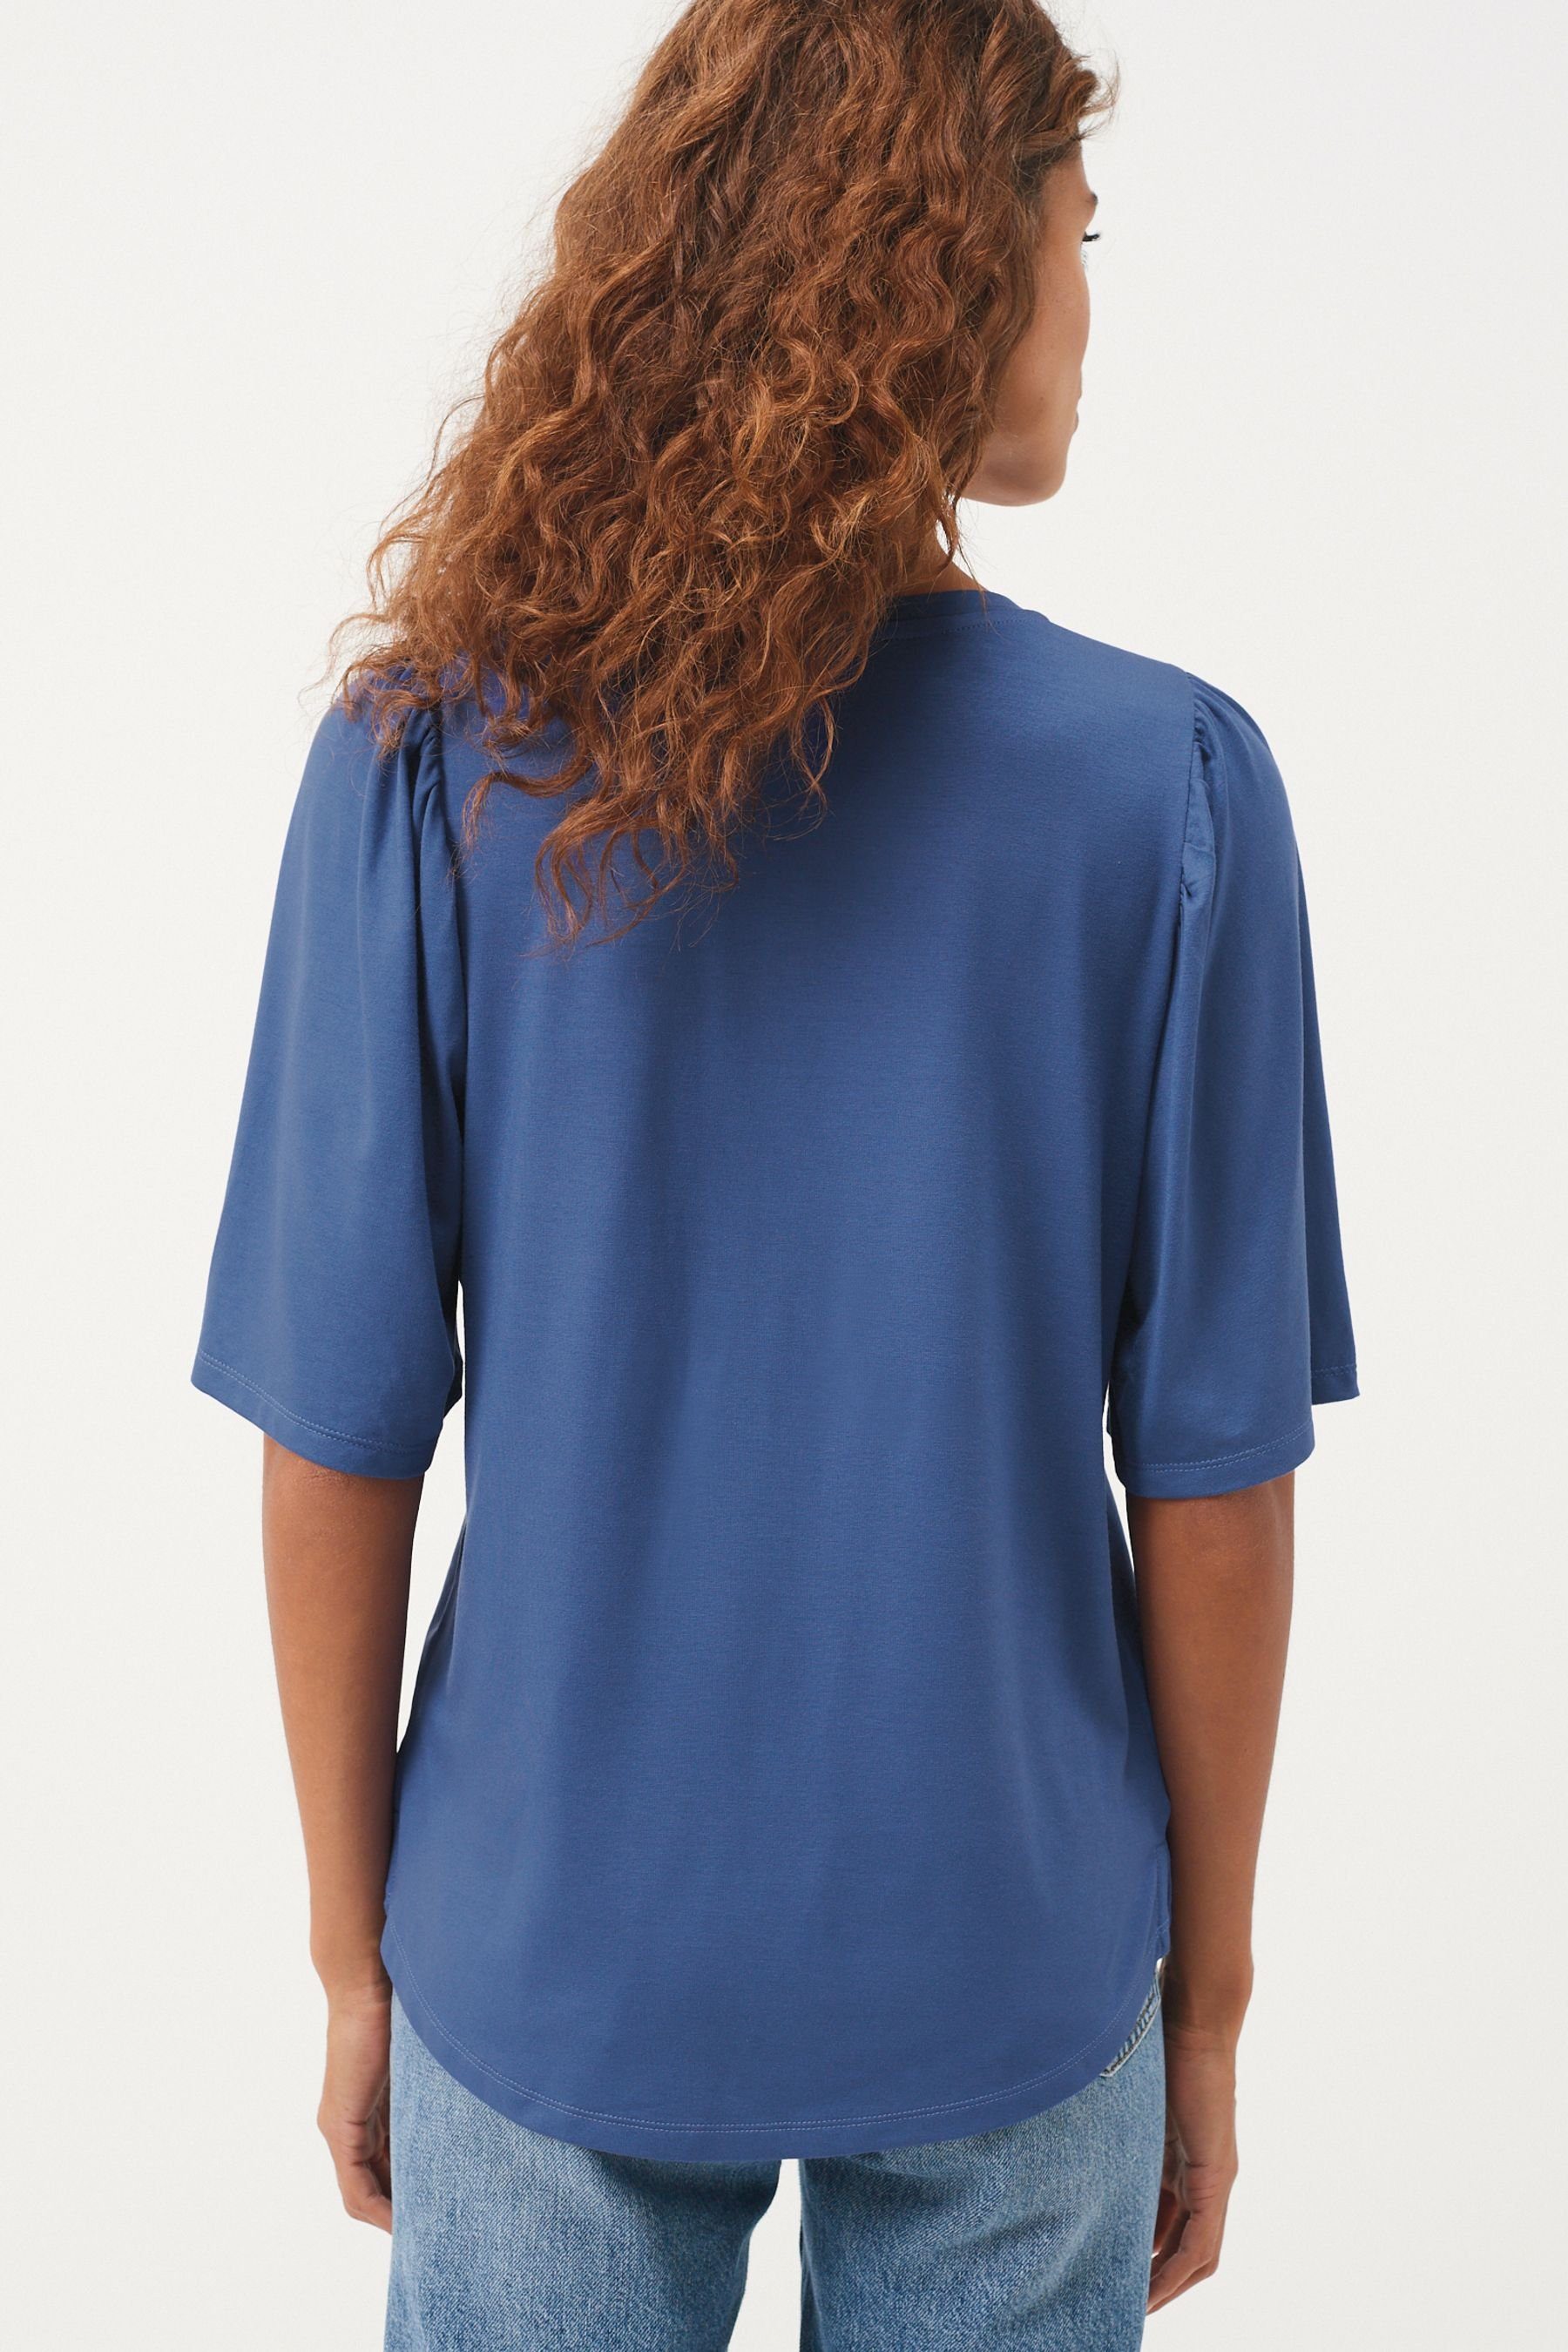 Damen Shirts Next Blusenshirt Kurzärmeliger Baumwoll-Schlafanzug